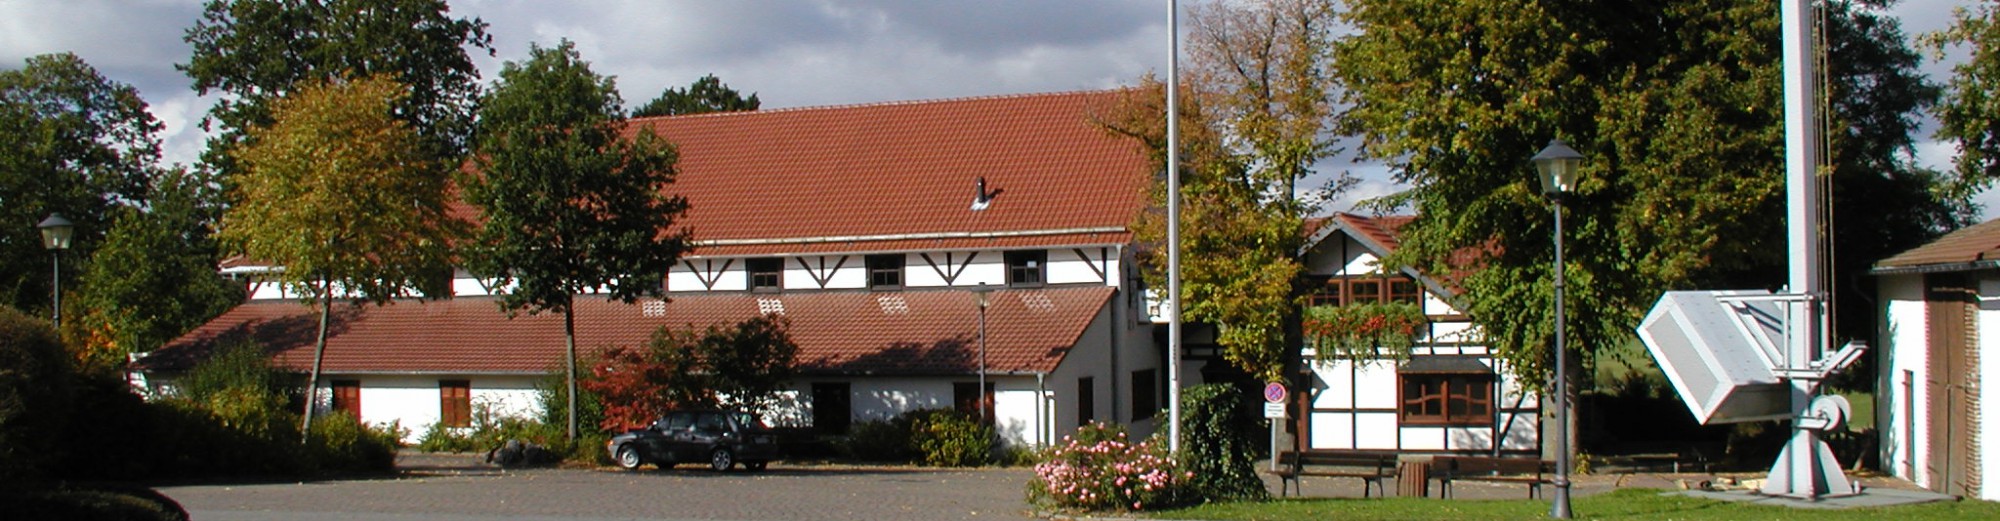 Schützenverein Erlinghausen e.V.